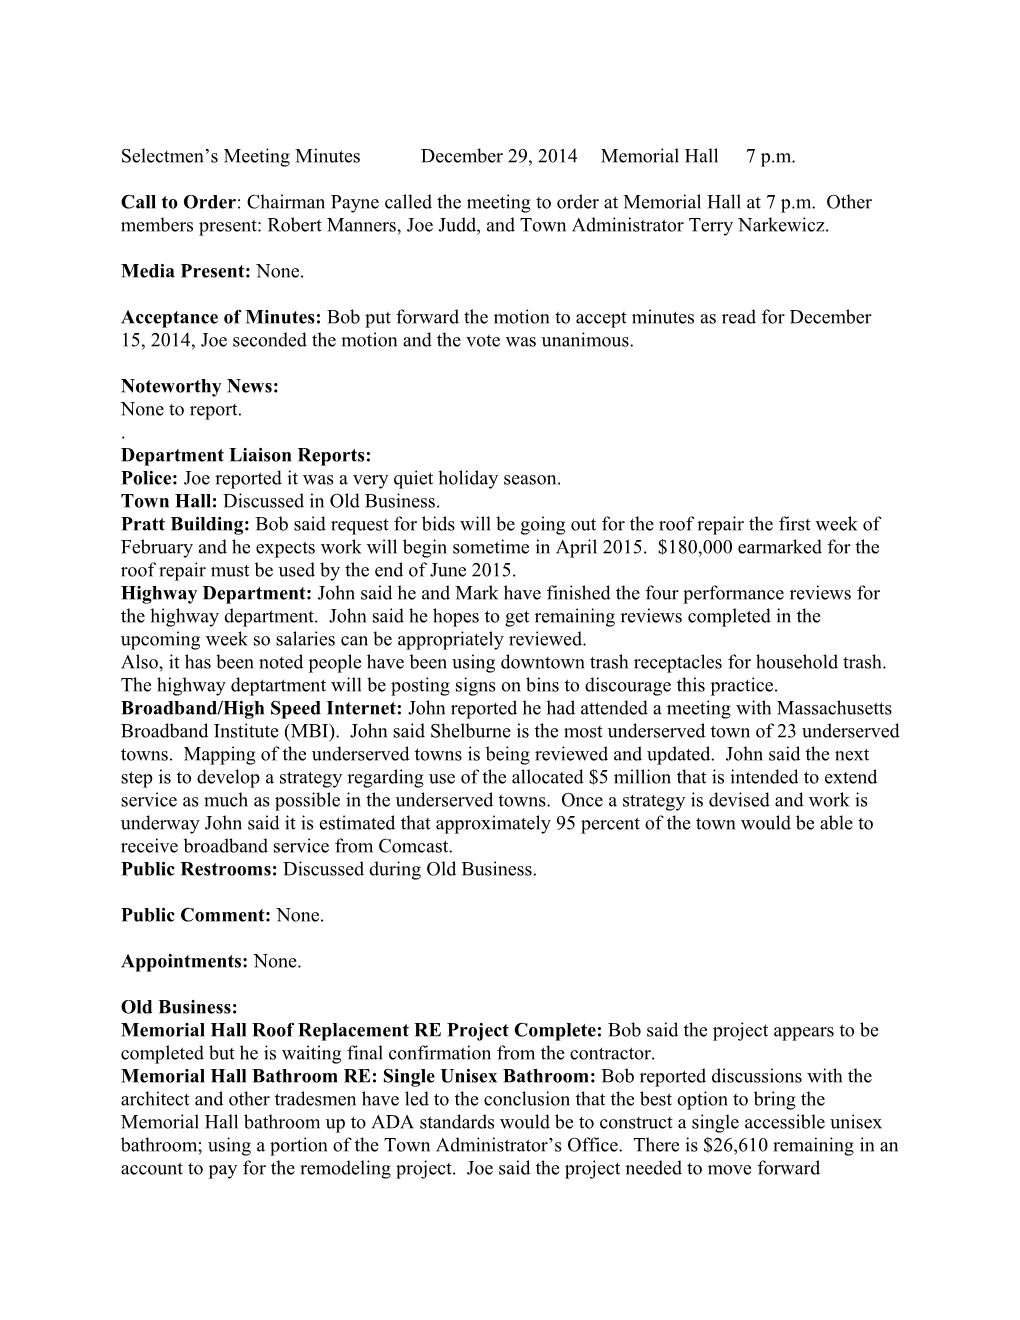 Selectmen S Meeting Minutes December 29, 2014 Memorial Hall 7 P.M